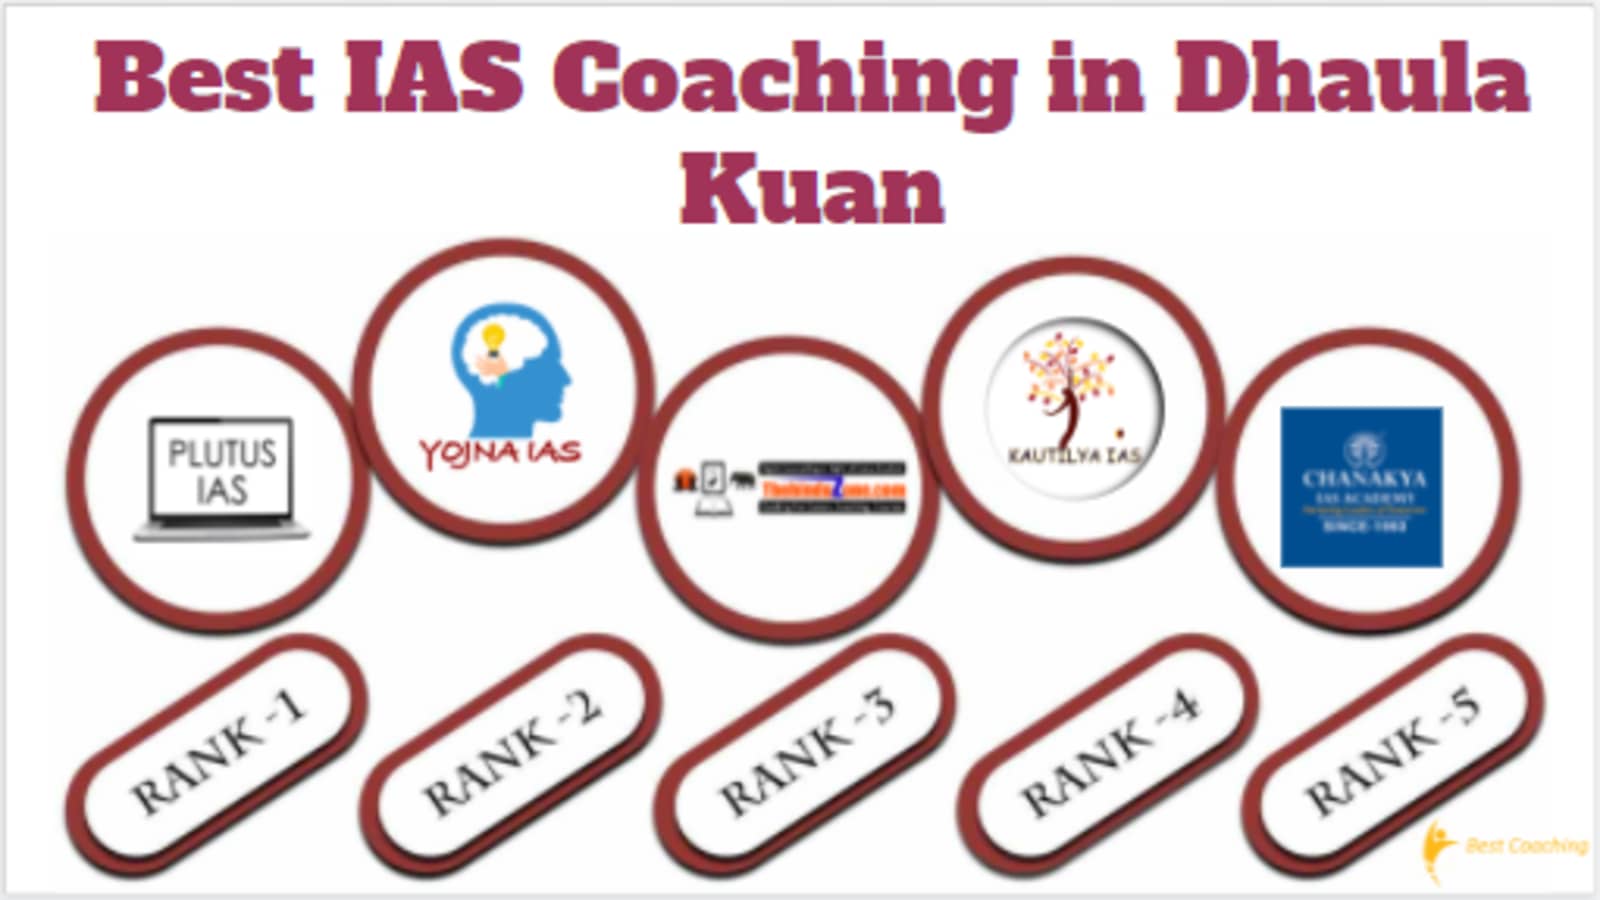 Best IAS Coaching in Dhaula Kuan